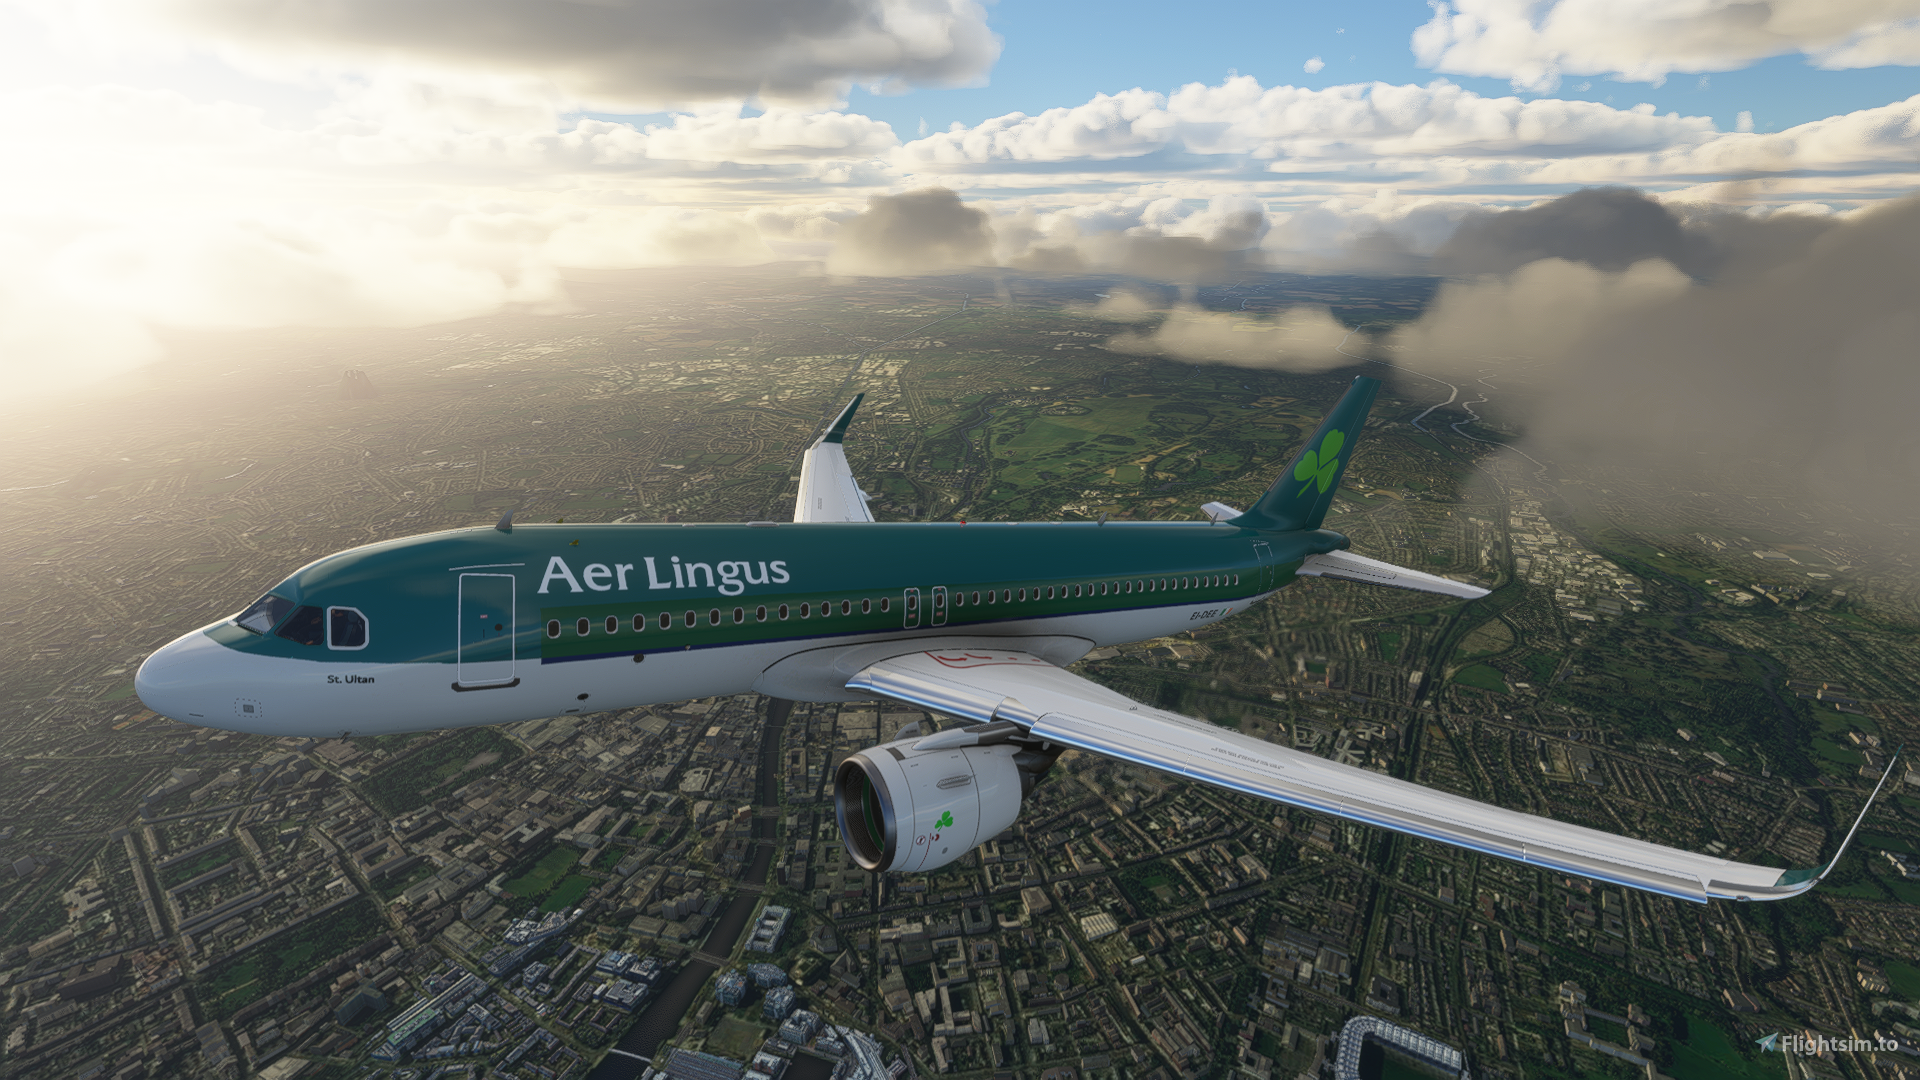 aer lingus flight status 100